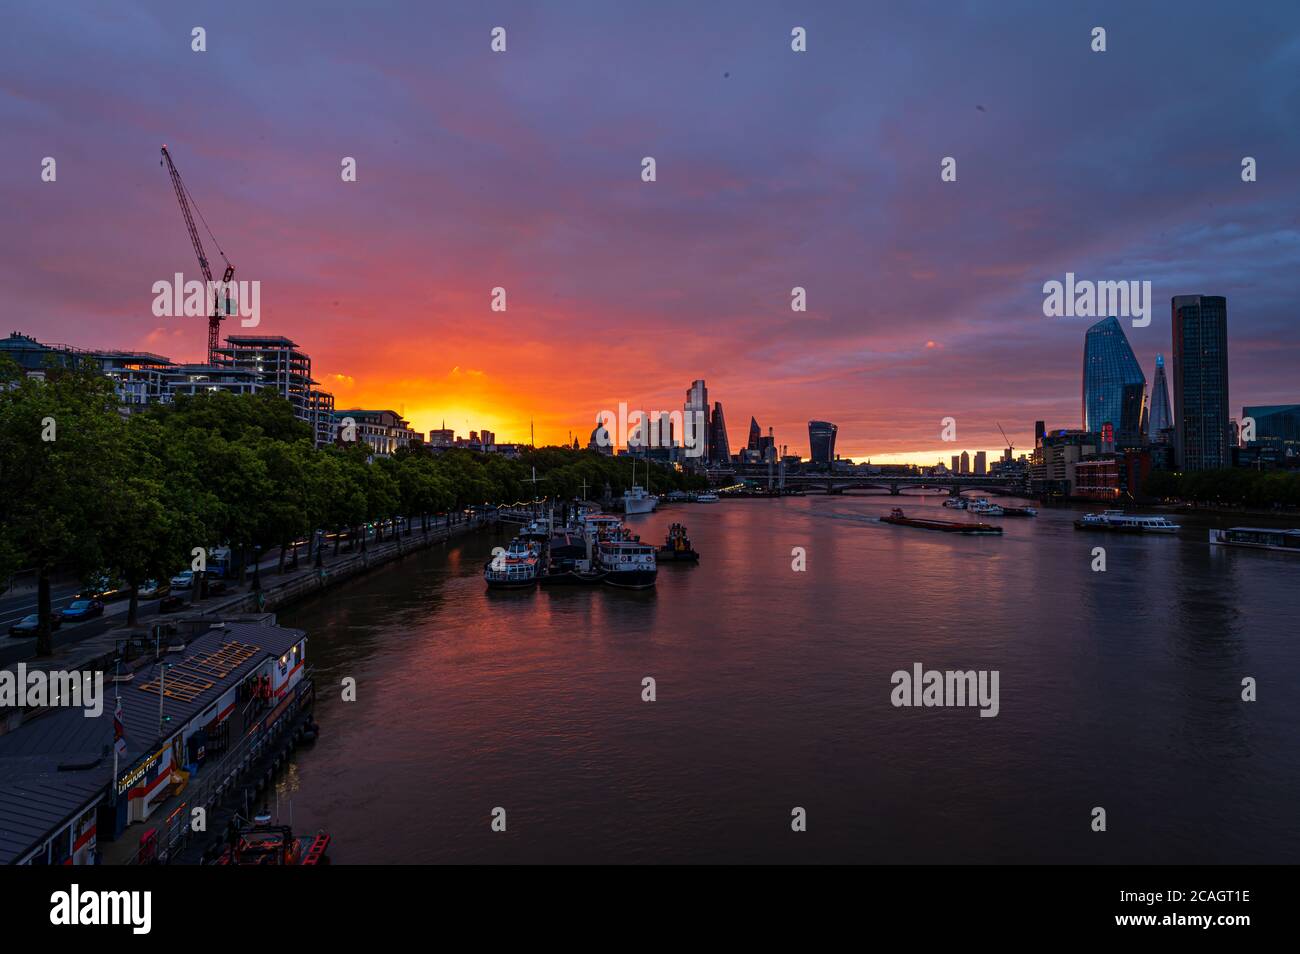 Lever du soleil dans le centre de Londres, avec le soleil qui vient d'apparaître, Londres Banque D'Images